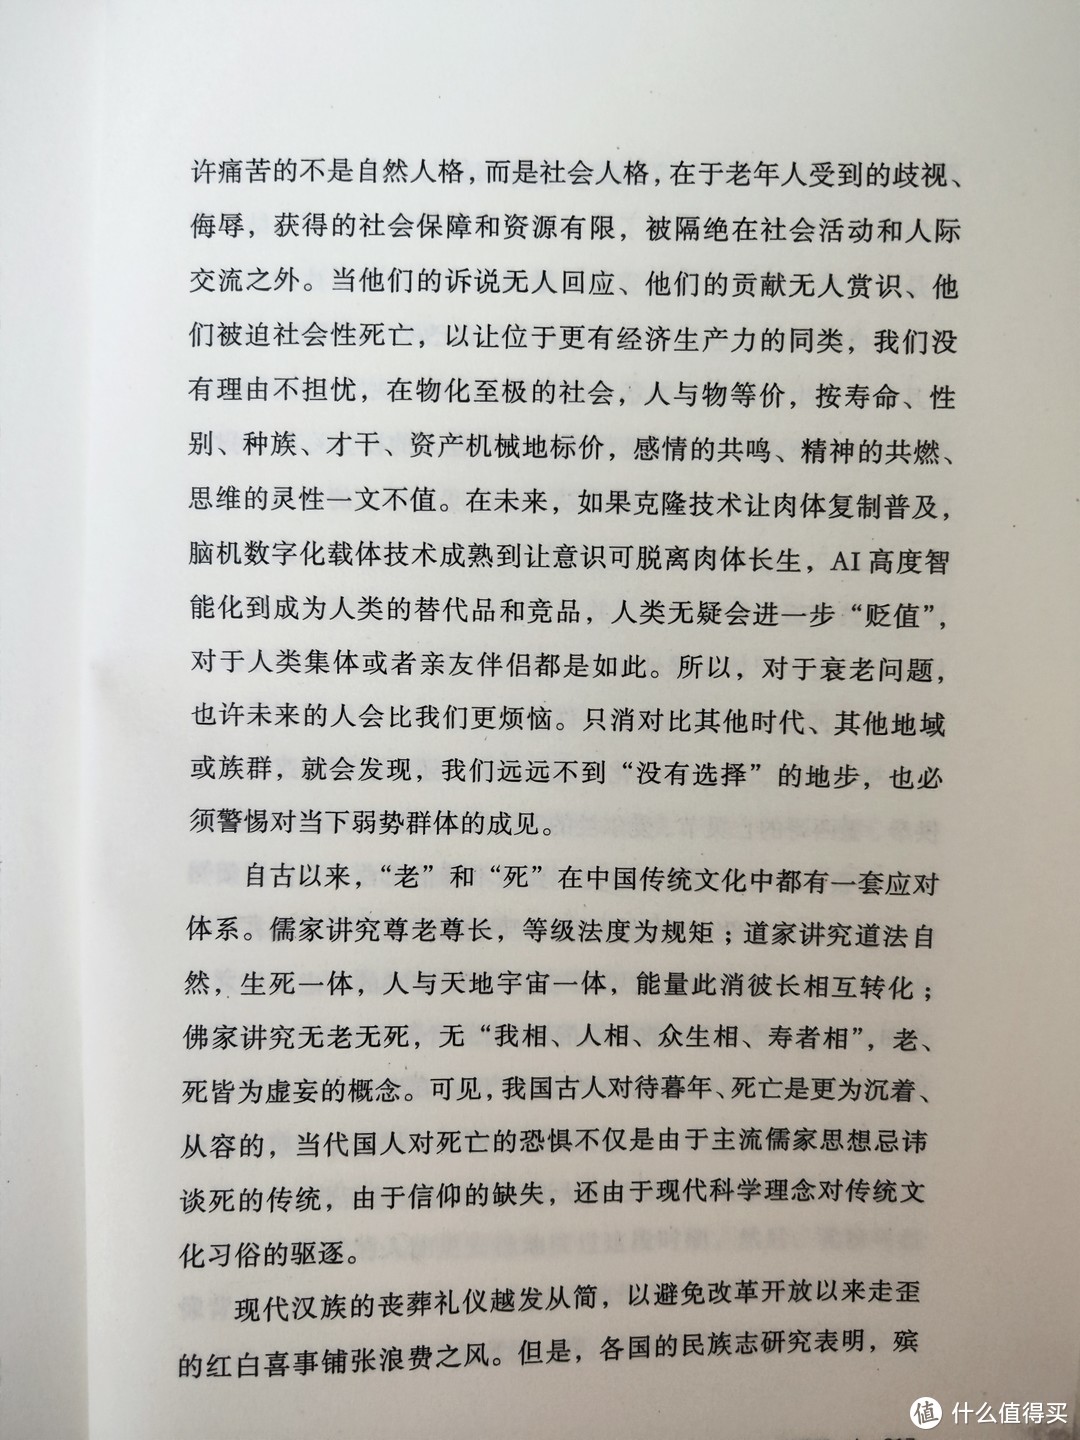 上海三联书店《谁住进了养老院》简评